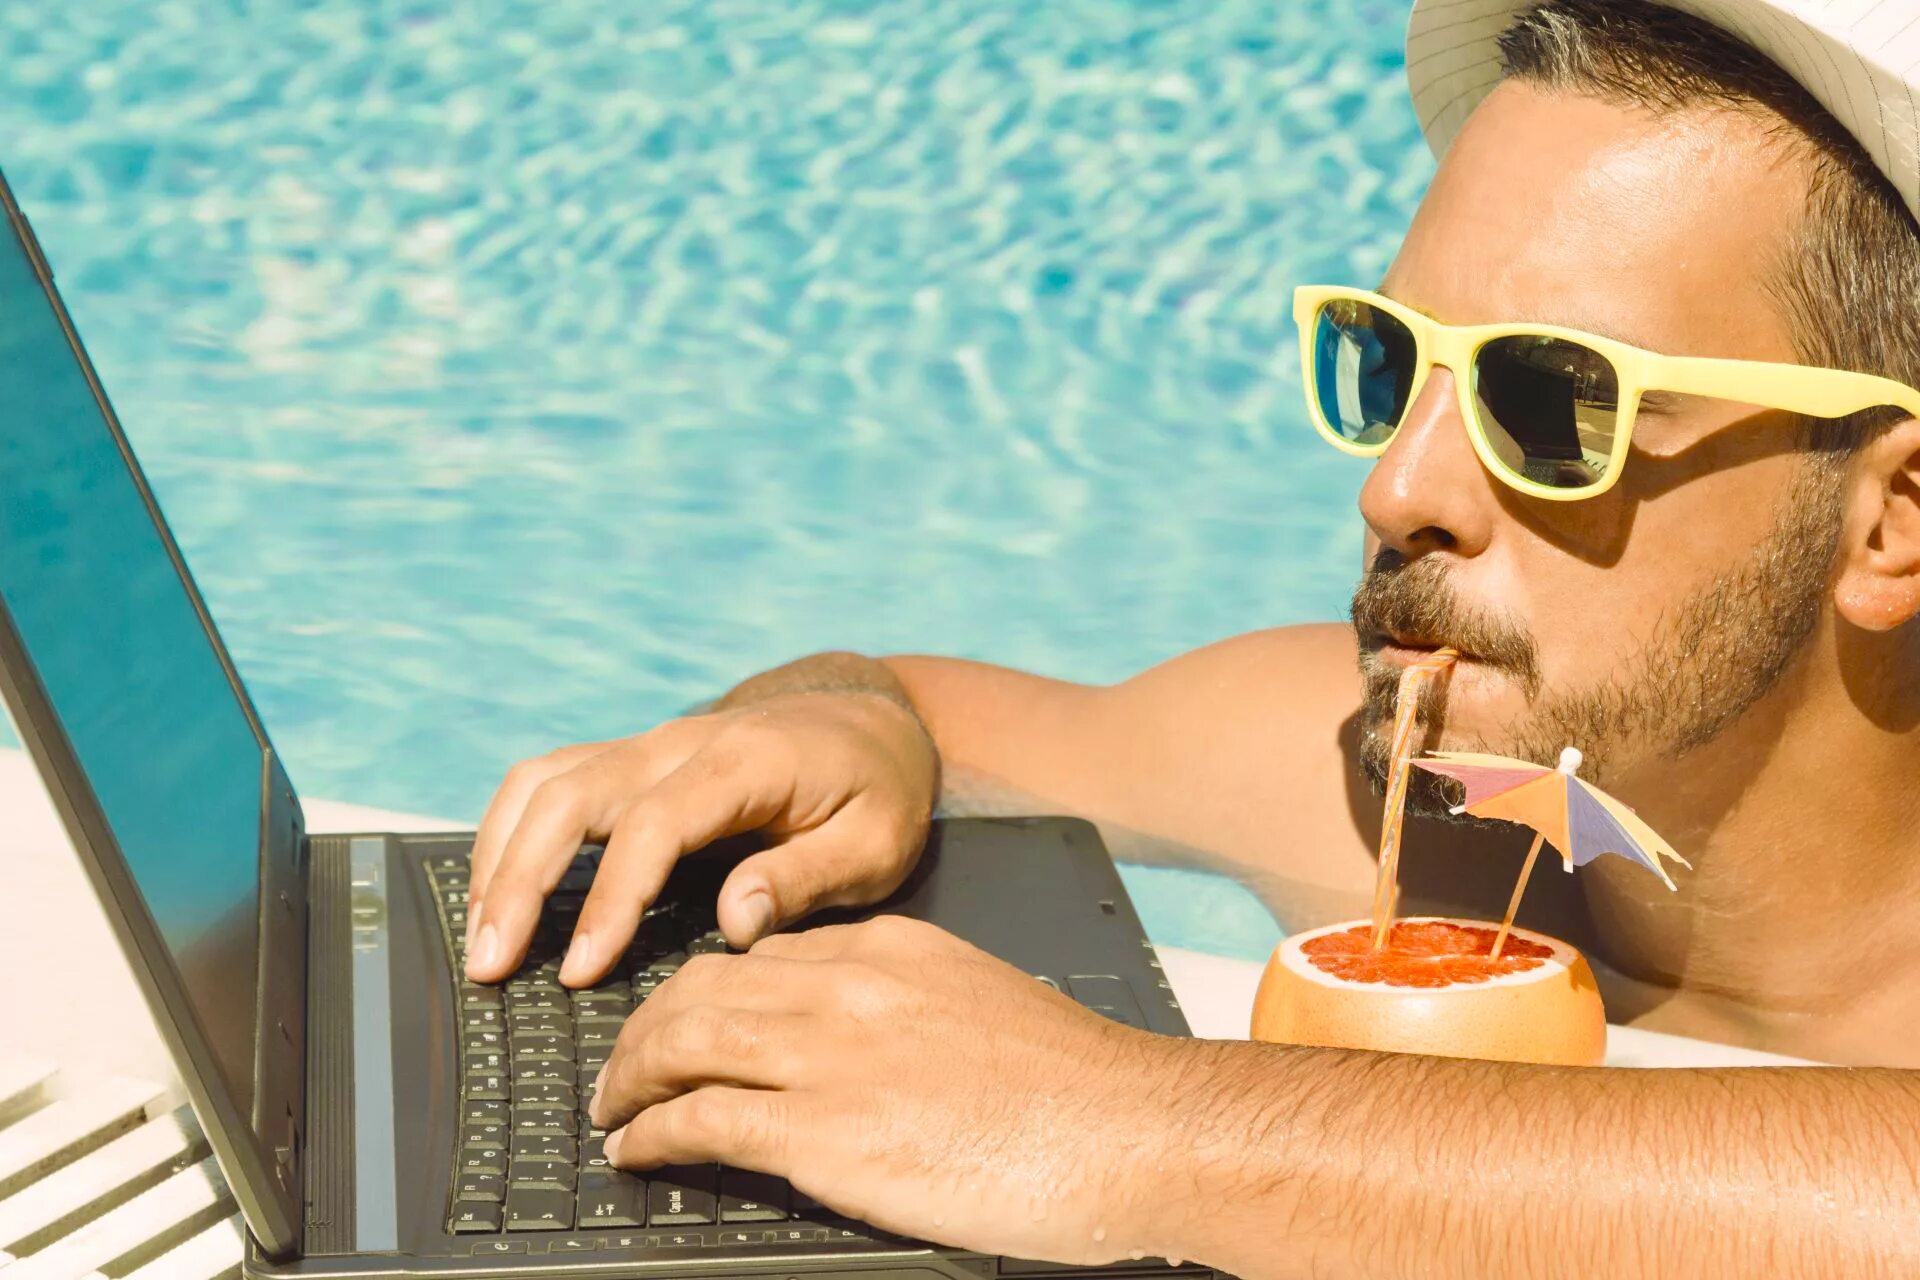 Нужен фрилансер. Бизнесмен на отдыхе. Мужчина с ноутбуком на море. Человек с ноутбуком на пляже. Бизнесмен на пляже с ноутбуком.